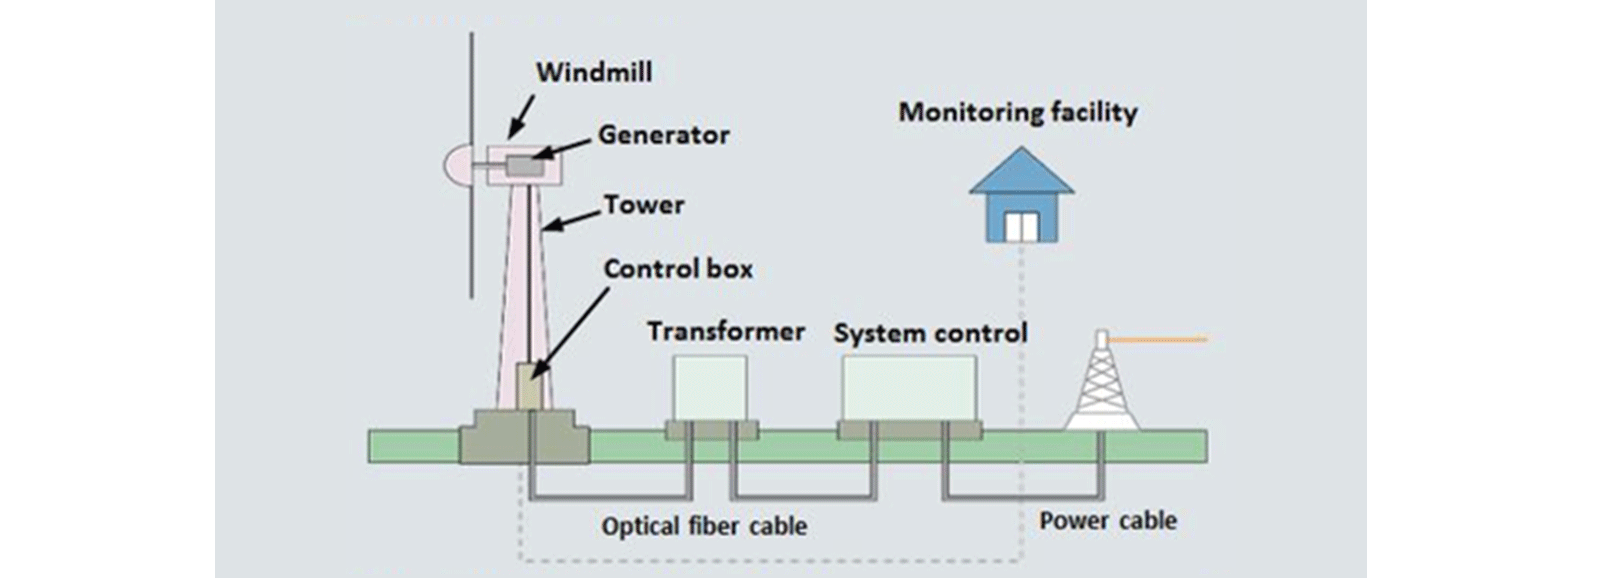 محطة طاقة الرياح